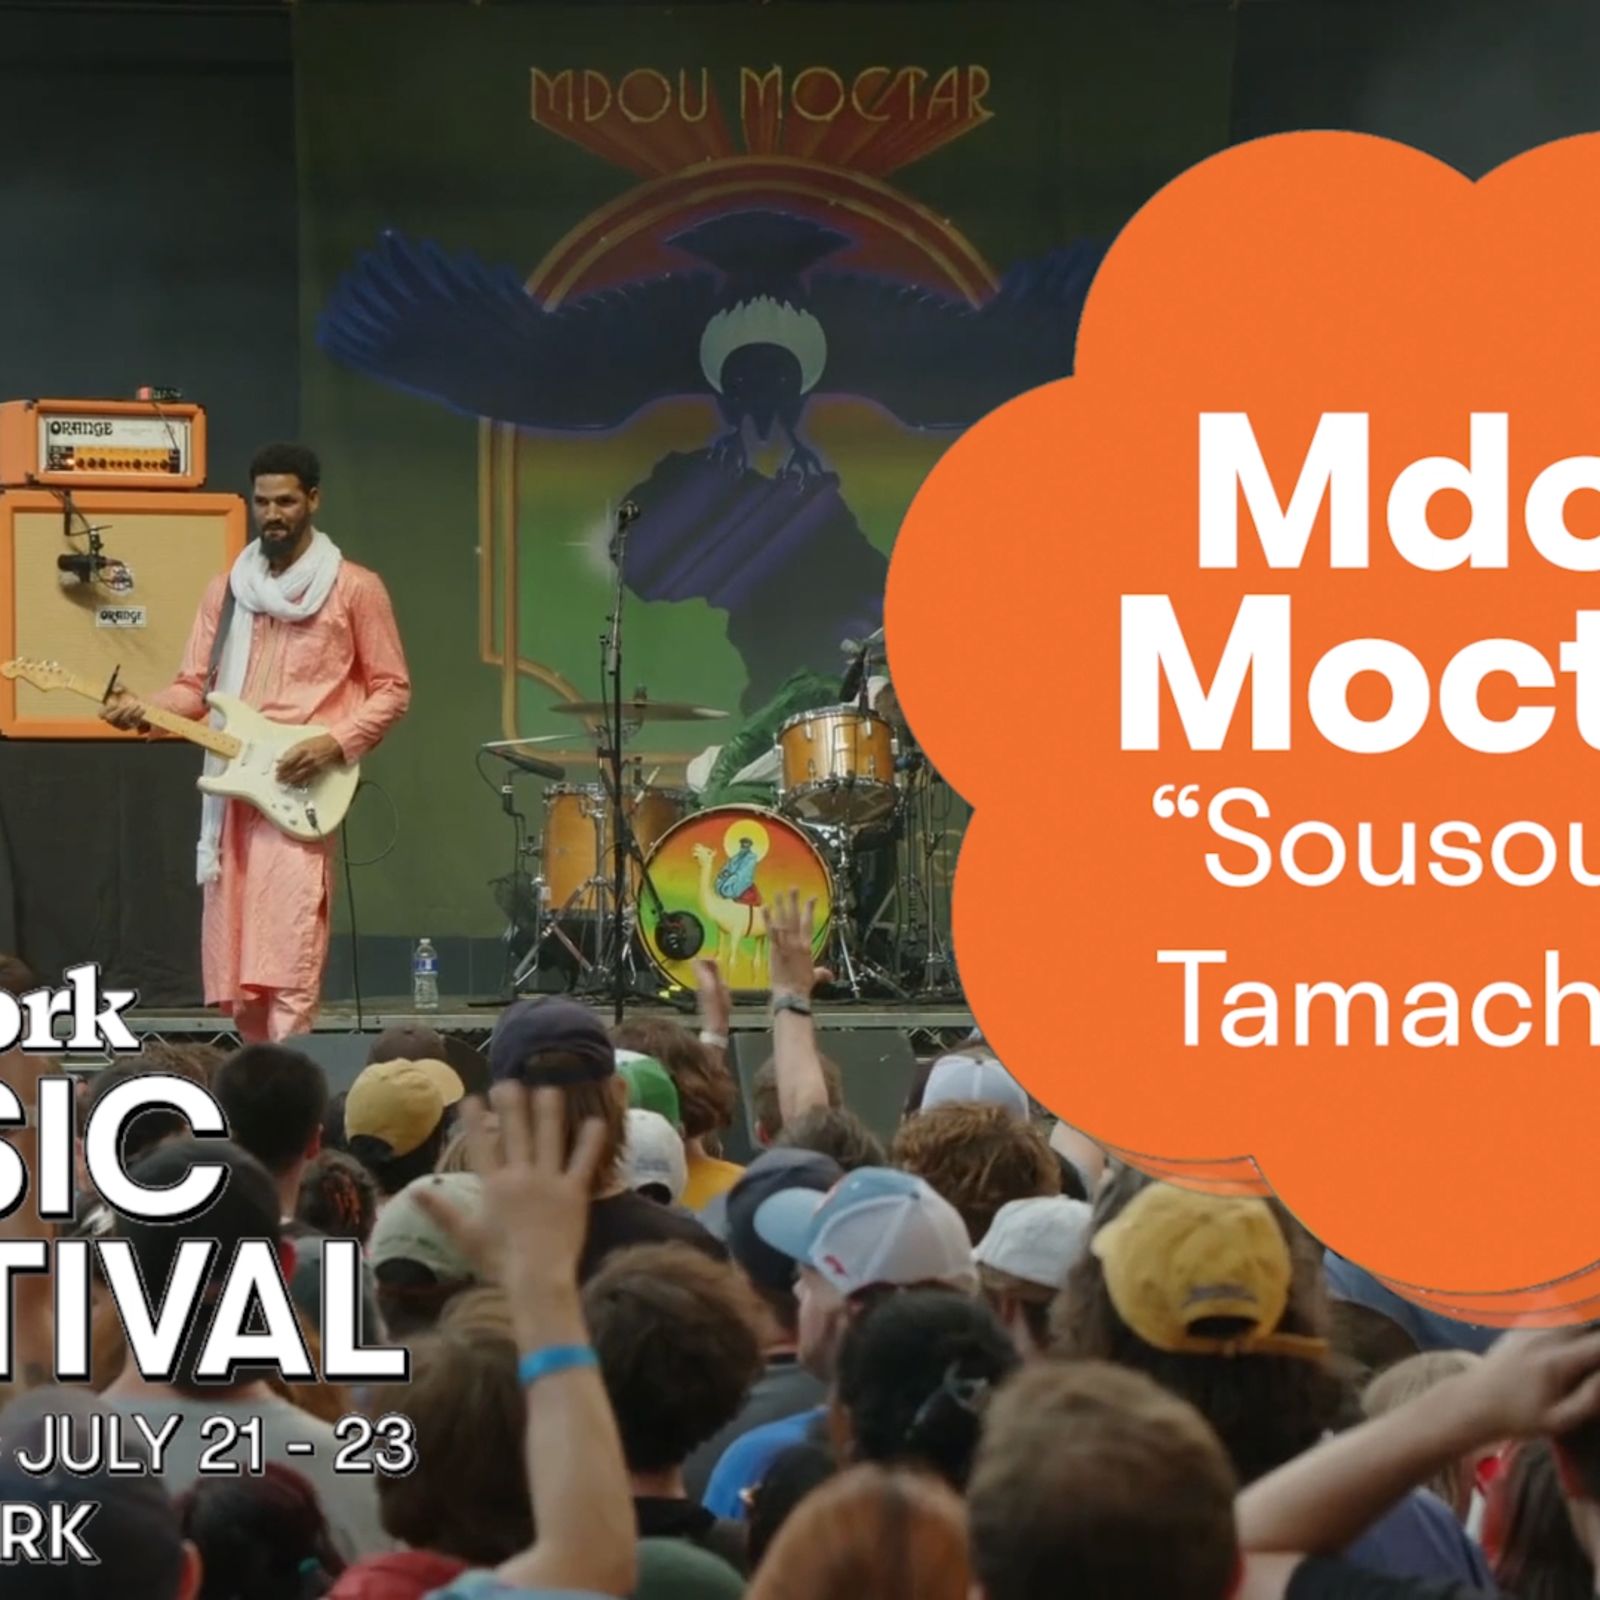 Mdou Moctar - "Sousome Tamachek" | Pitchfork Festival 2023